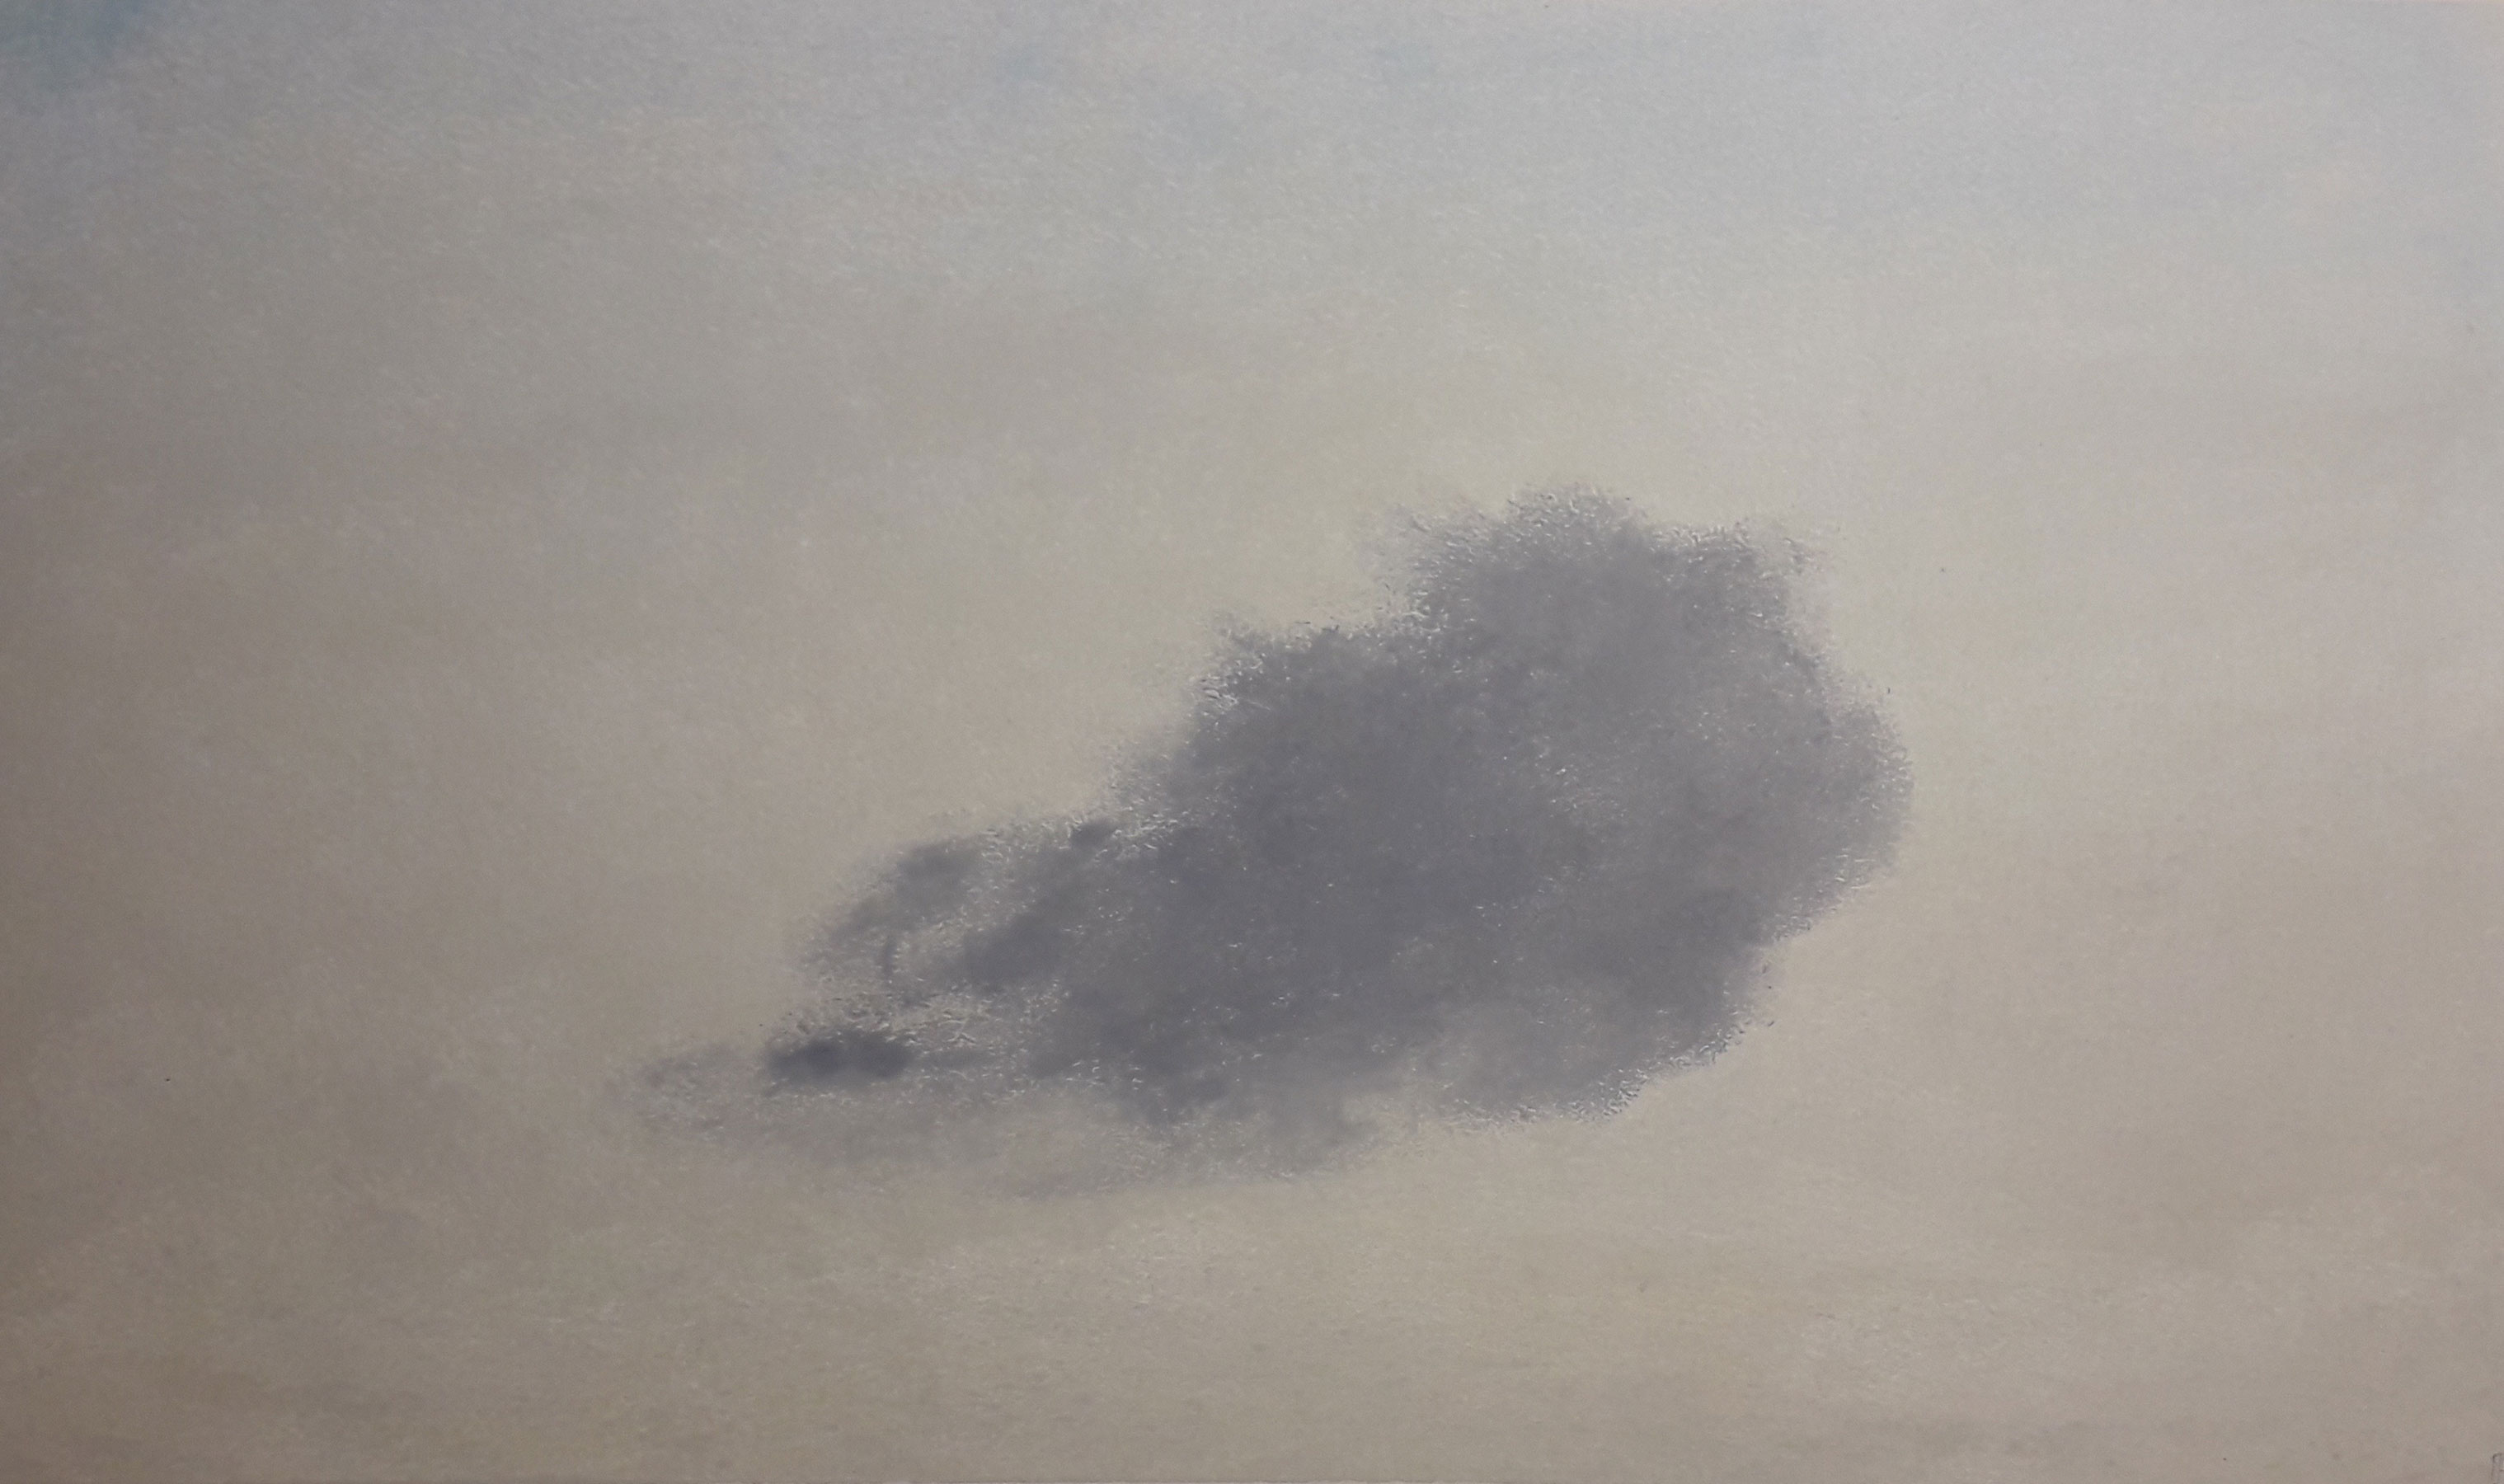 Nube XIX - 2019 - pastel sobre papel - 30x45cm. Alicia Marsans